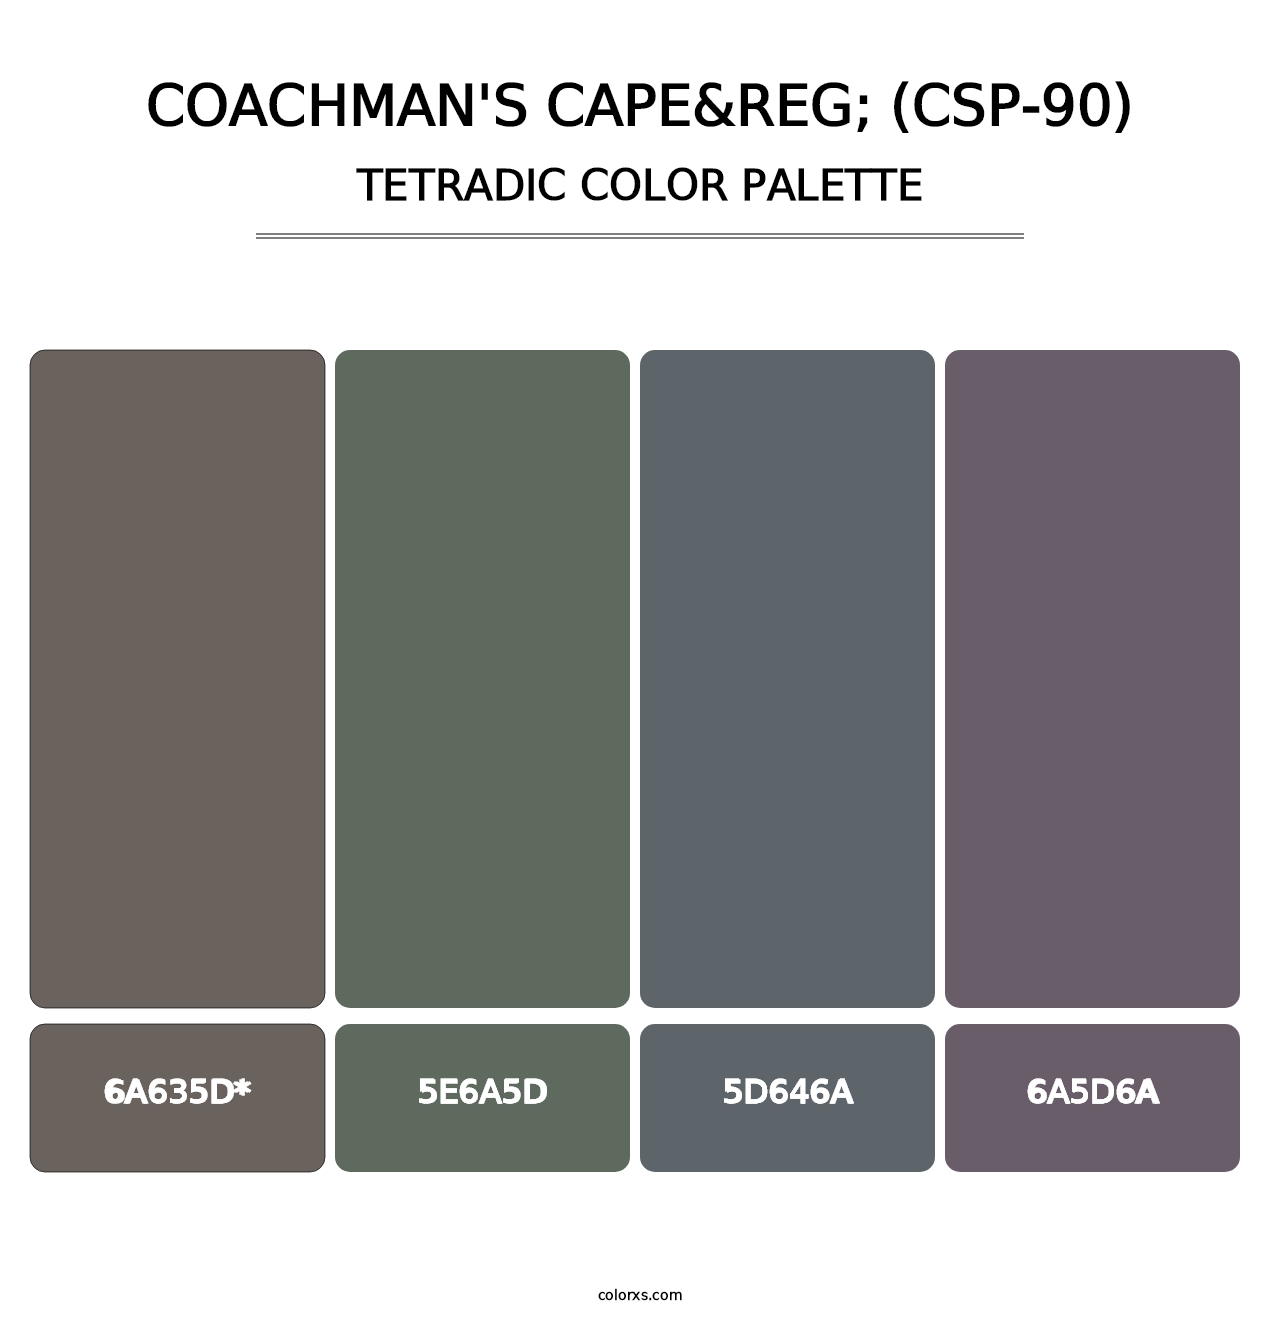 Coachman's Cape&reg; (CSP-90) - Tetradic Color Palette